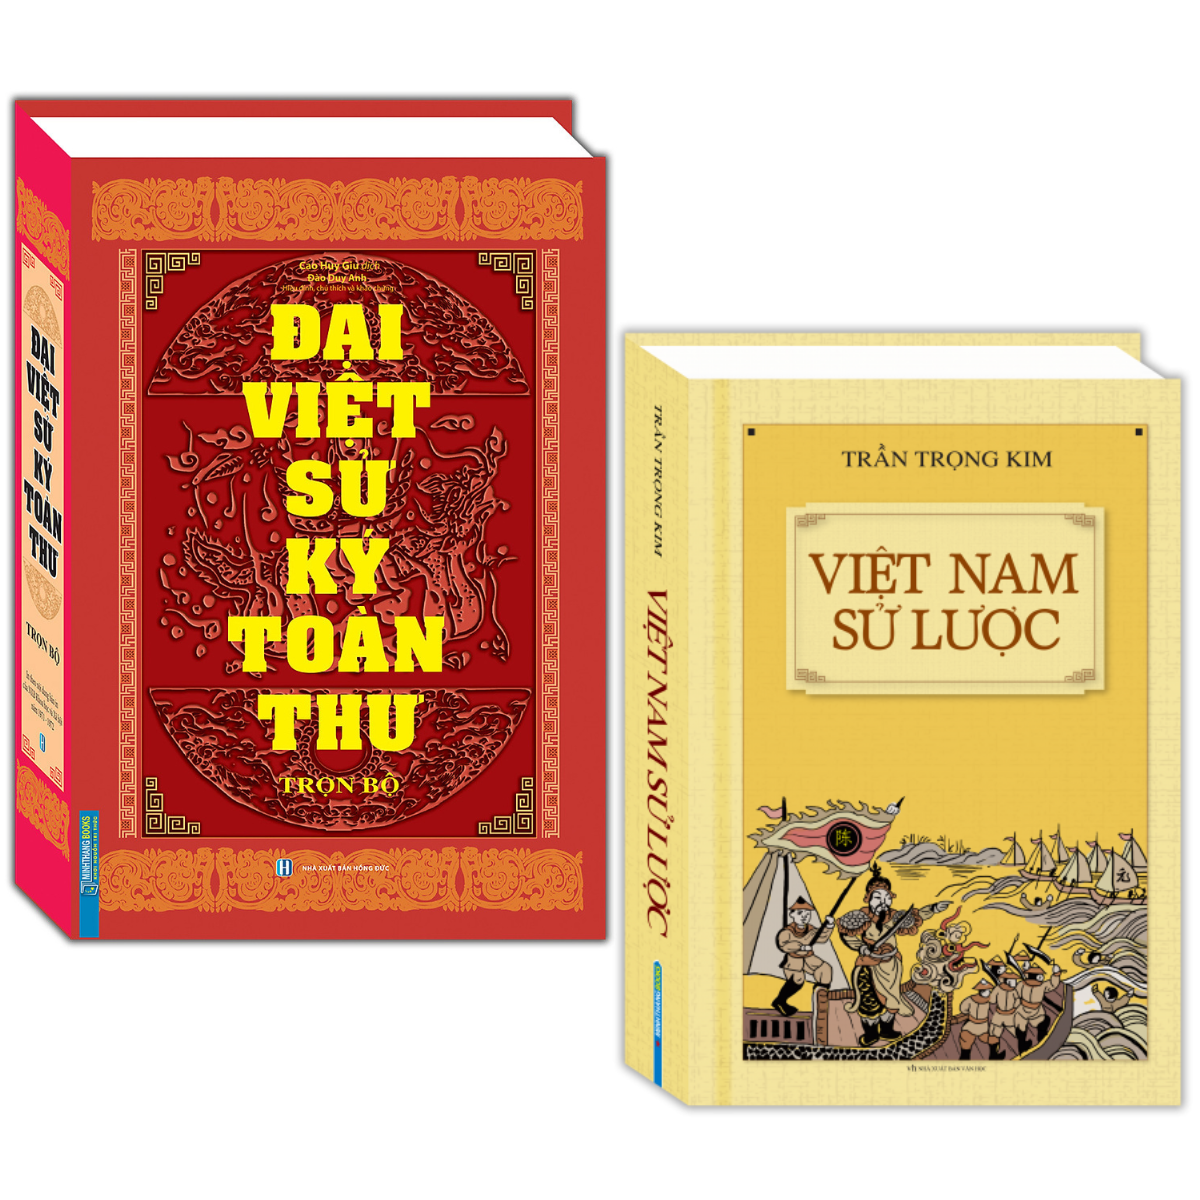 Đại Việt Sử Ký Toàn Thư Trọn Bộ + Việt Nam Sử Lược (Bìa cứng)